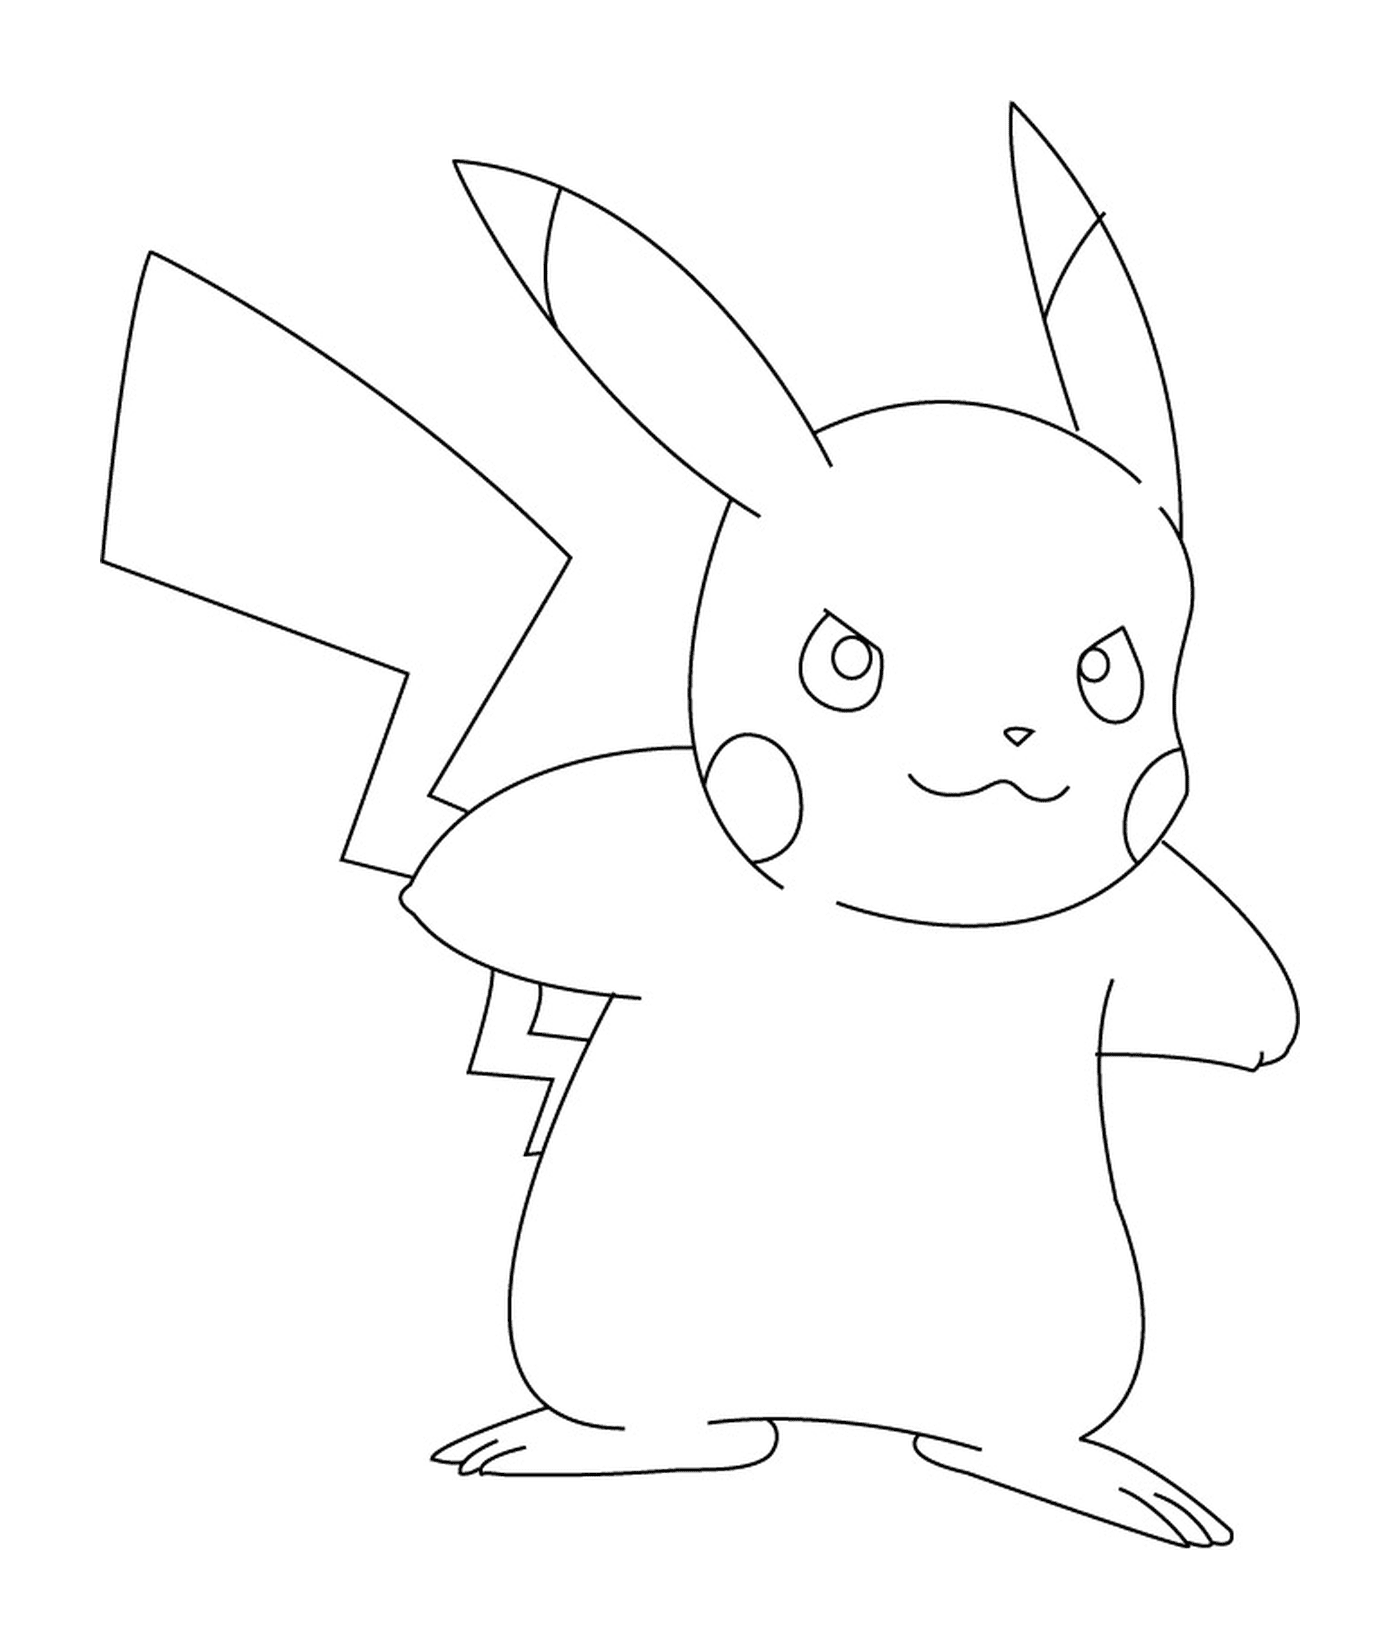  Pikachu mit einem spitzbübischen Ausdruck 